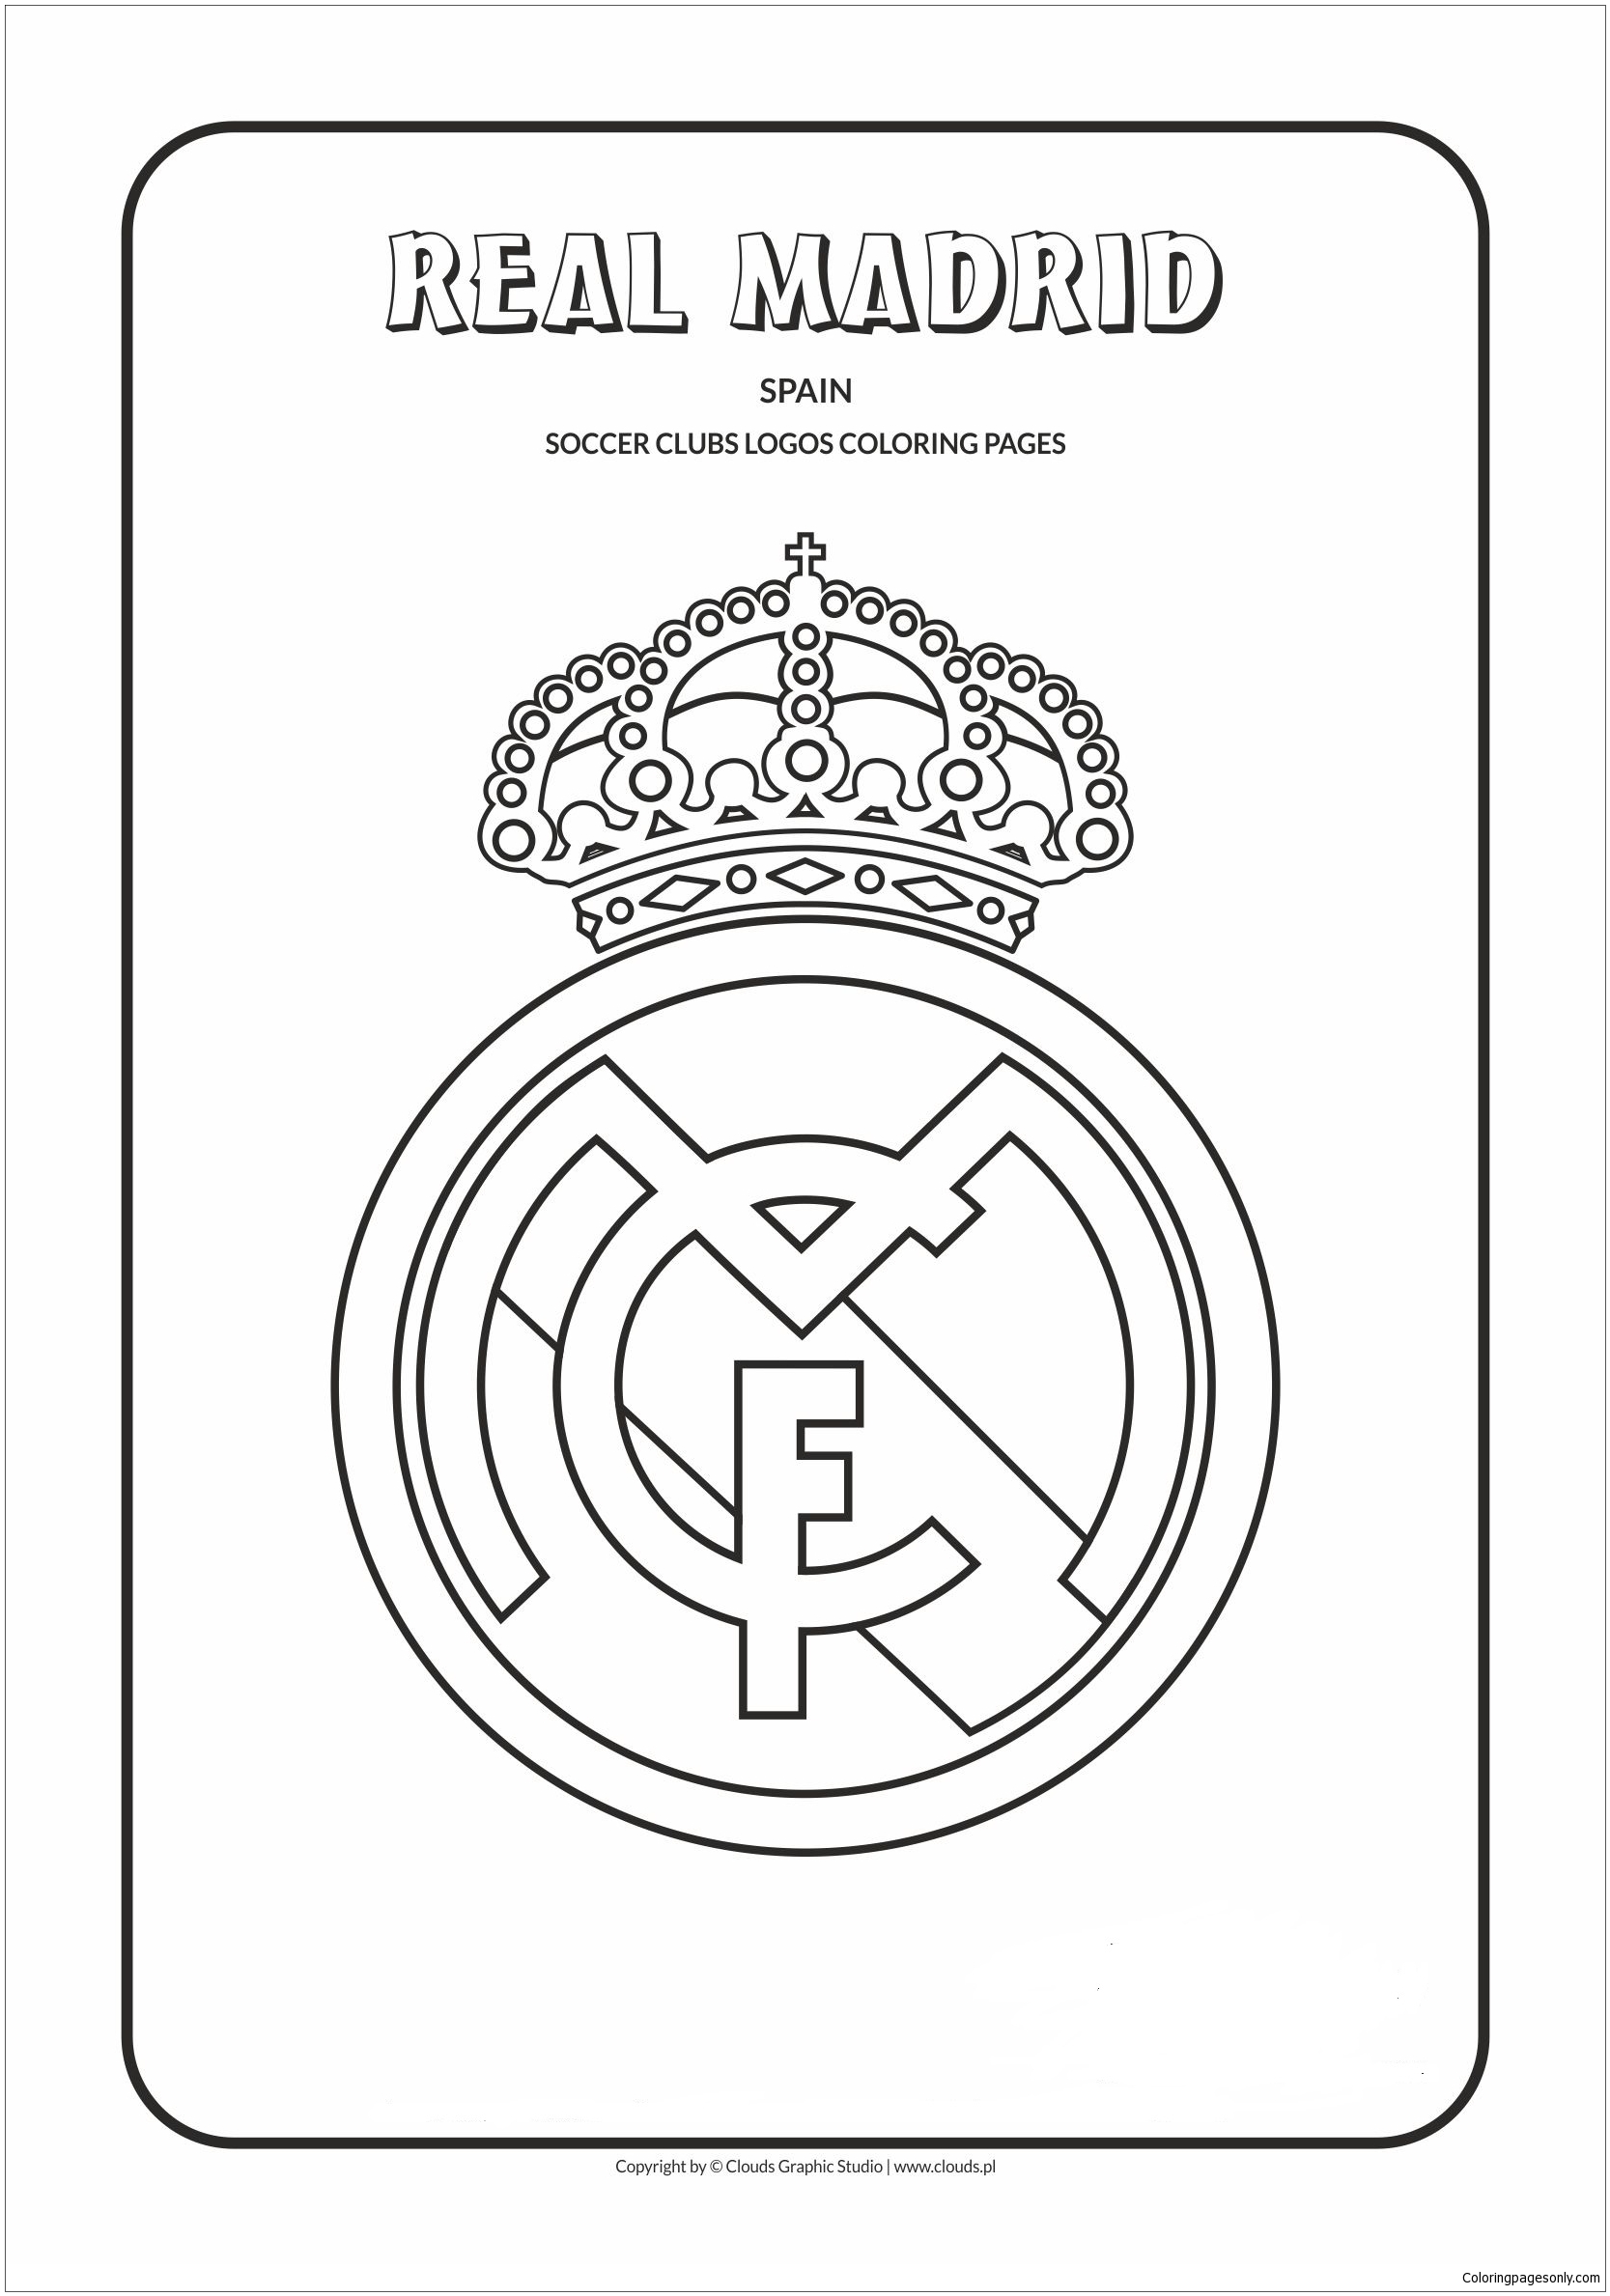 Real Madrid à partir des logos de l'équipe espagnole de la Liga